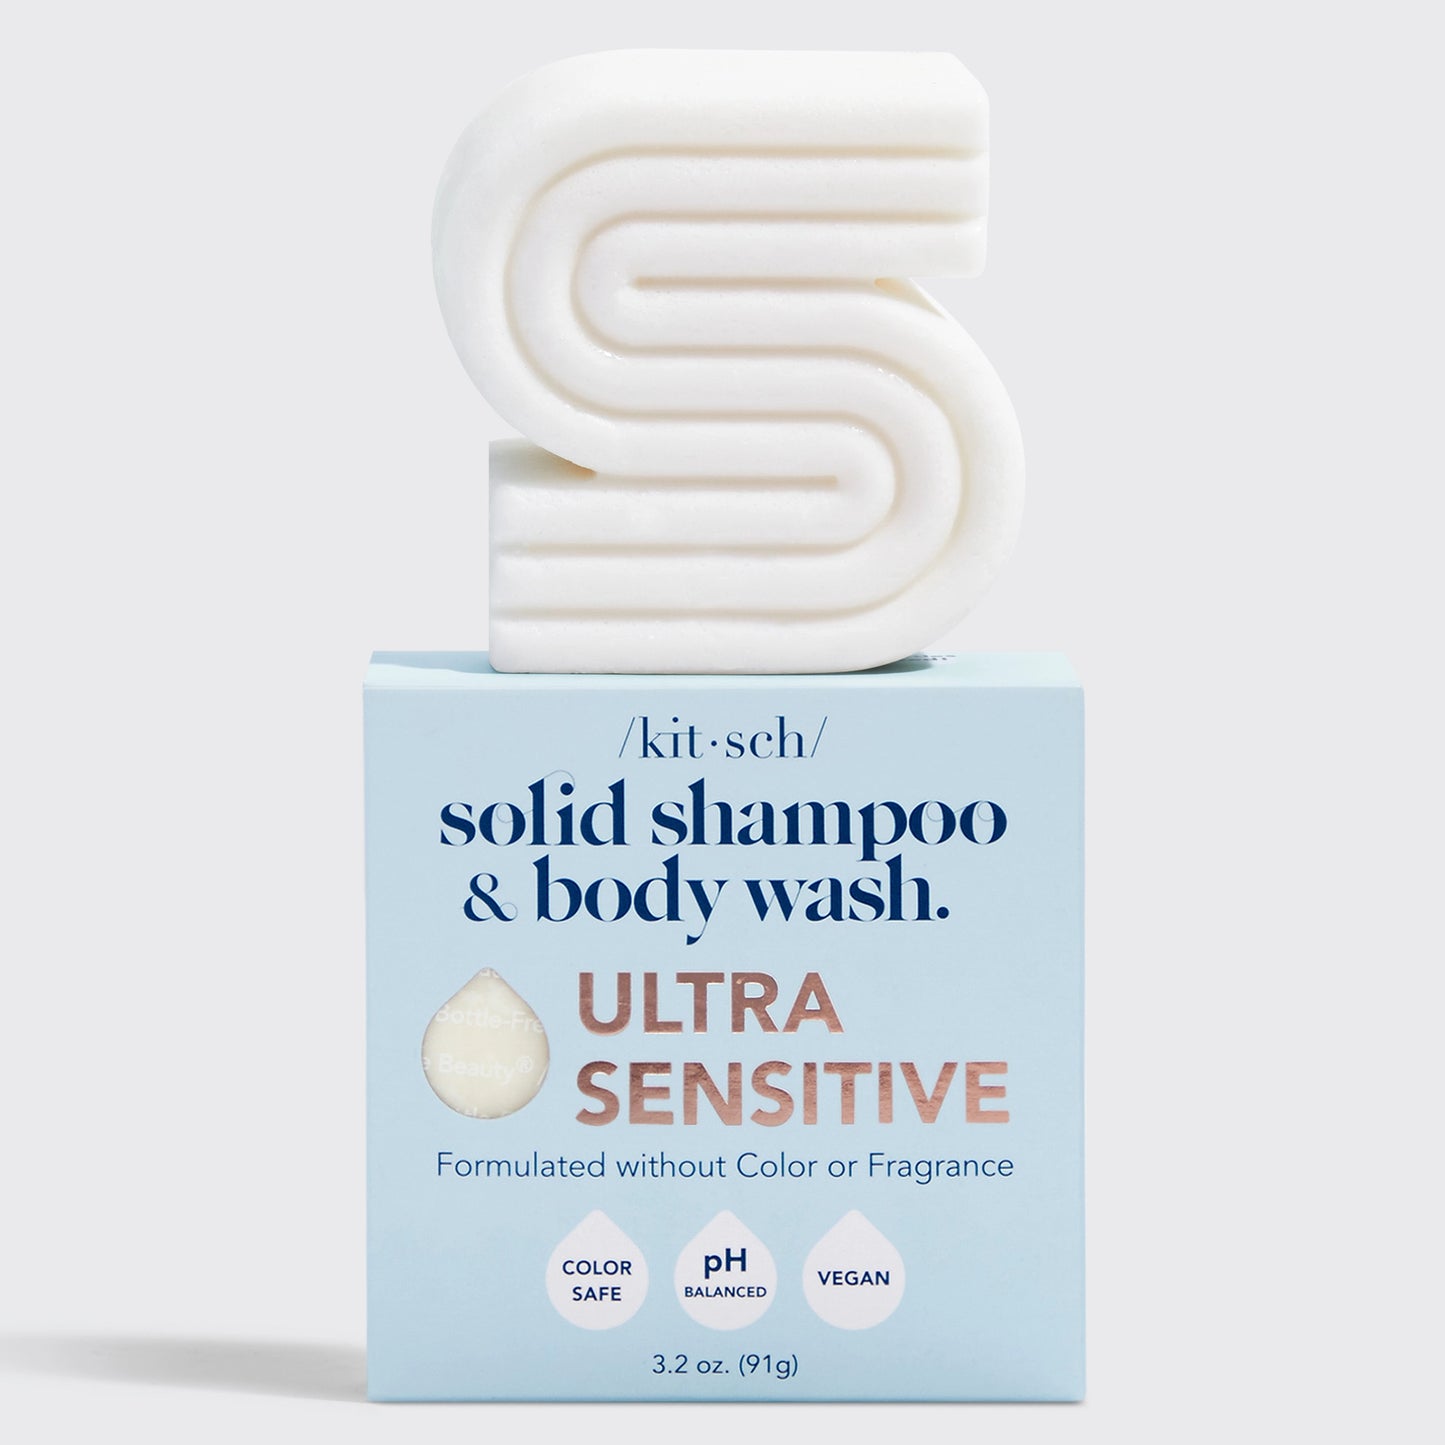 Kitsch Ultra Sensitive Shampoo & Body Wash Bar Fragrance-Free